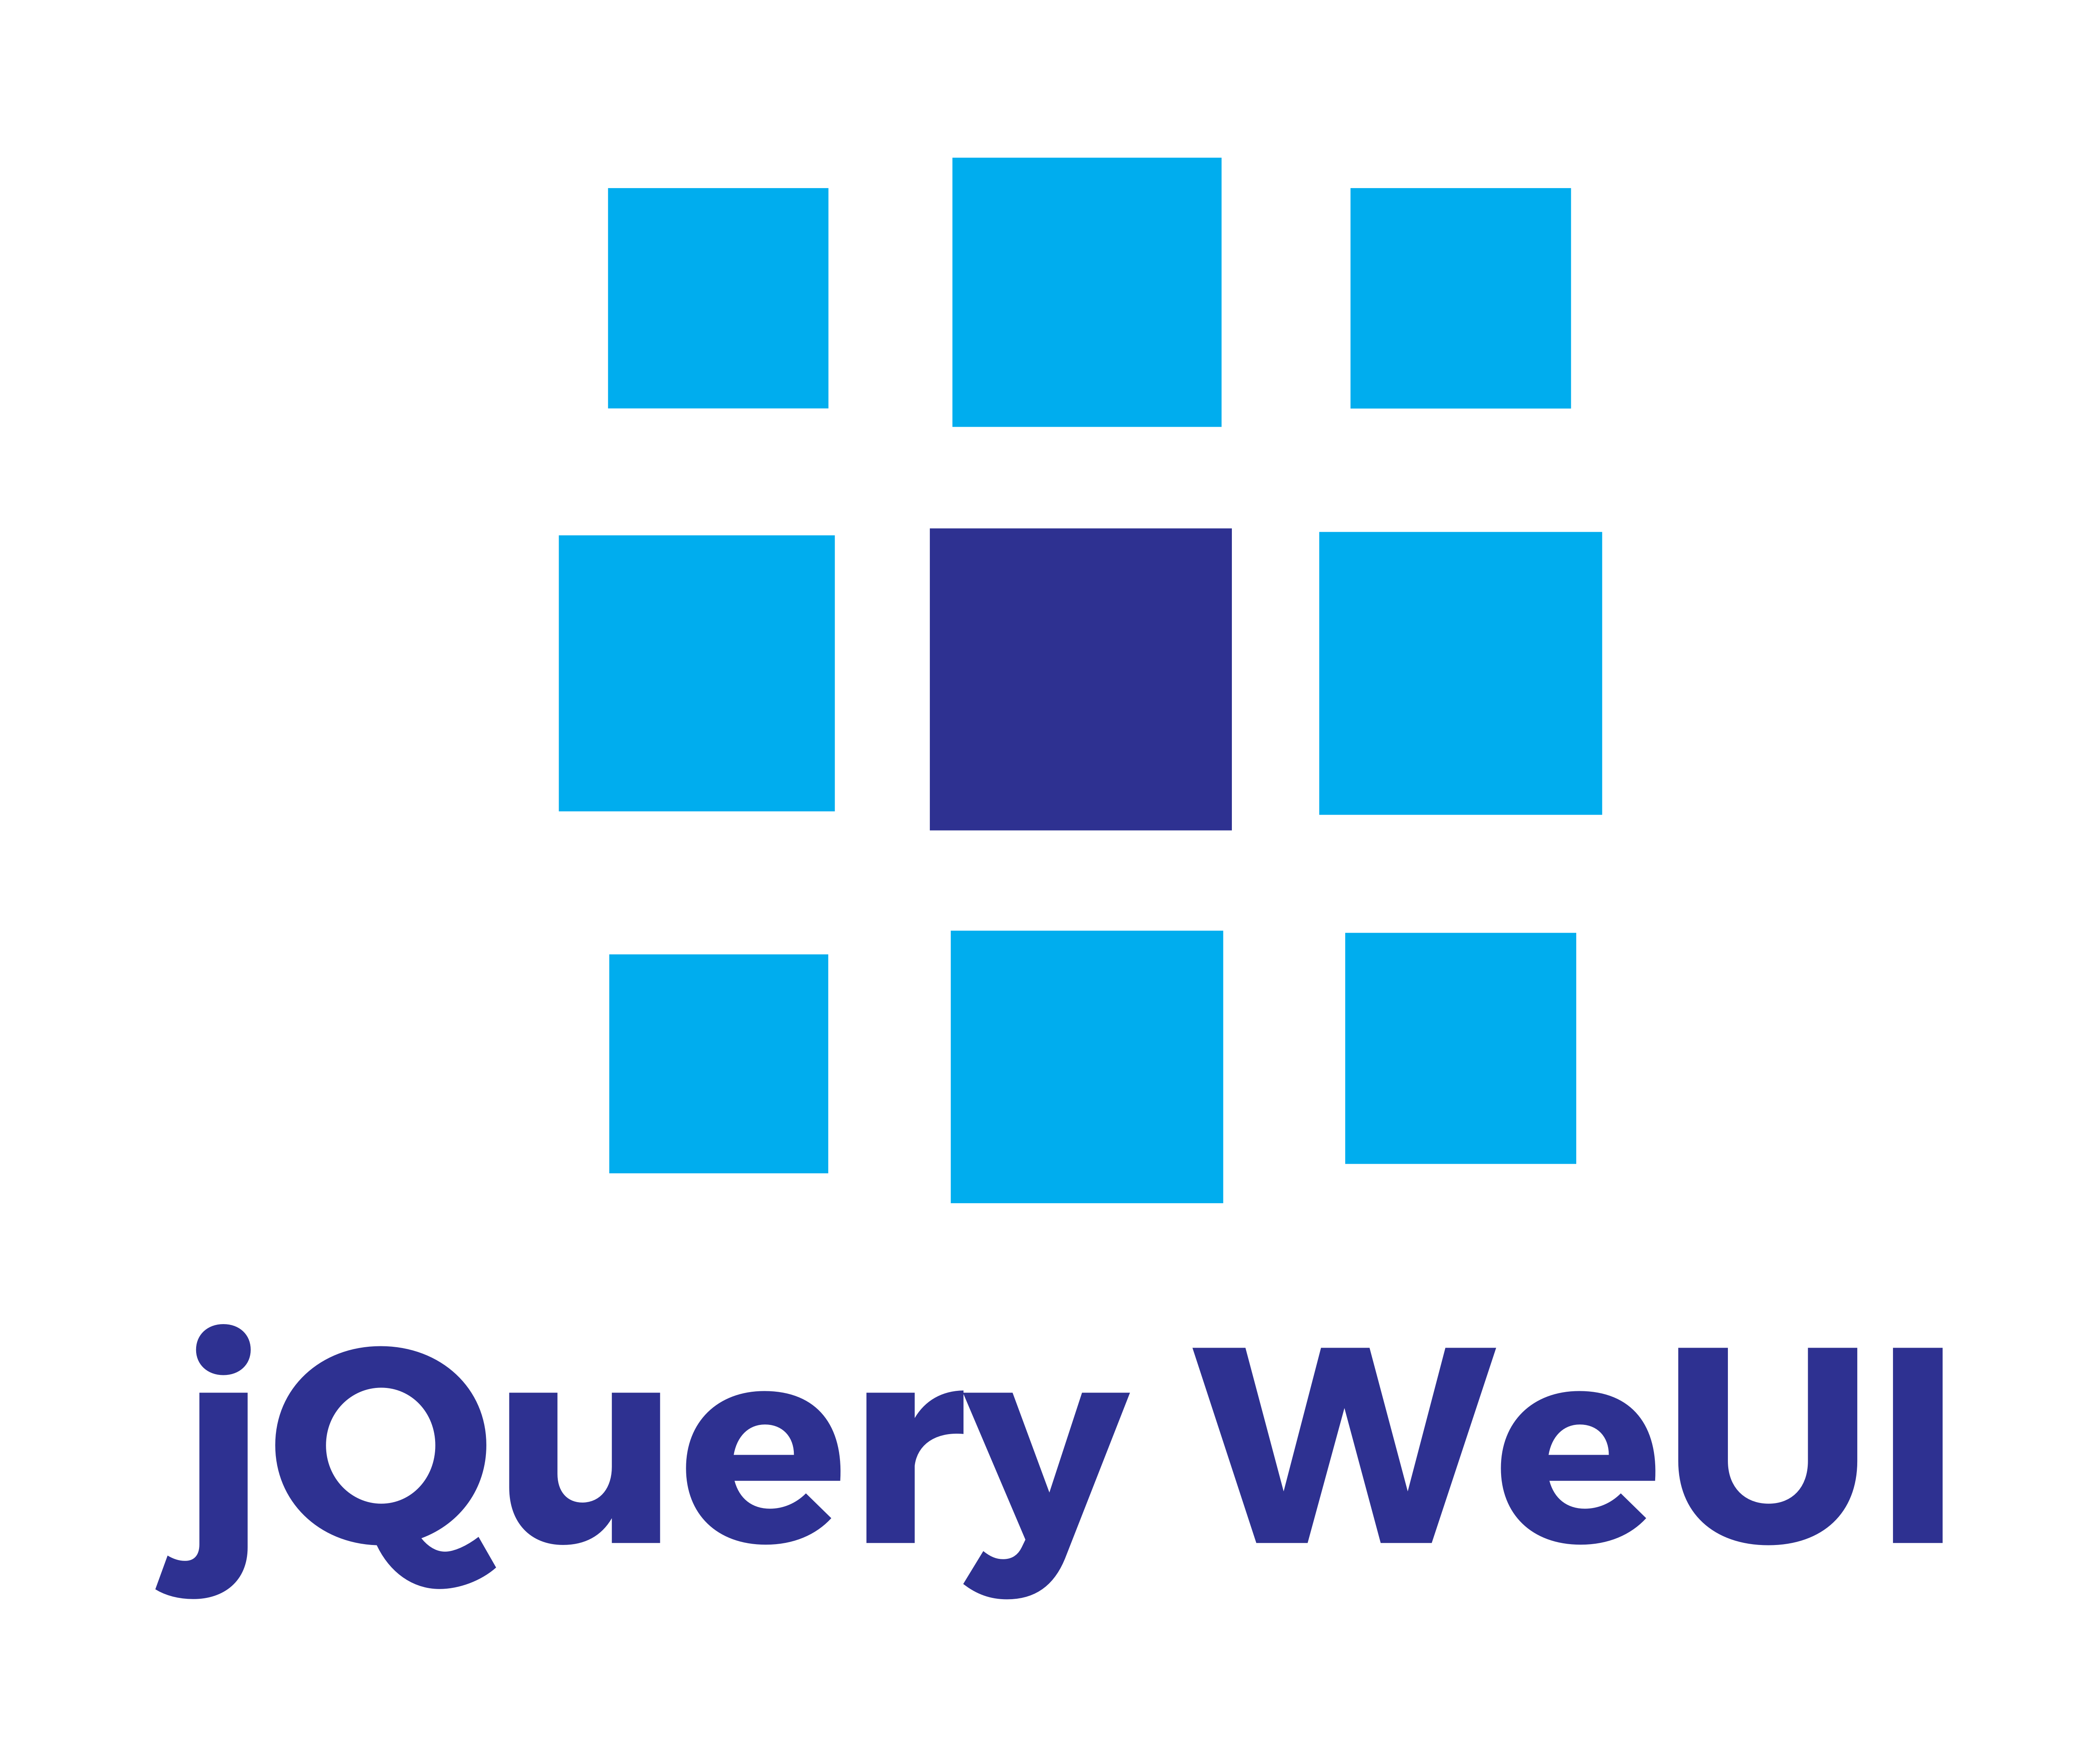 jQuery WeUI